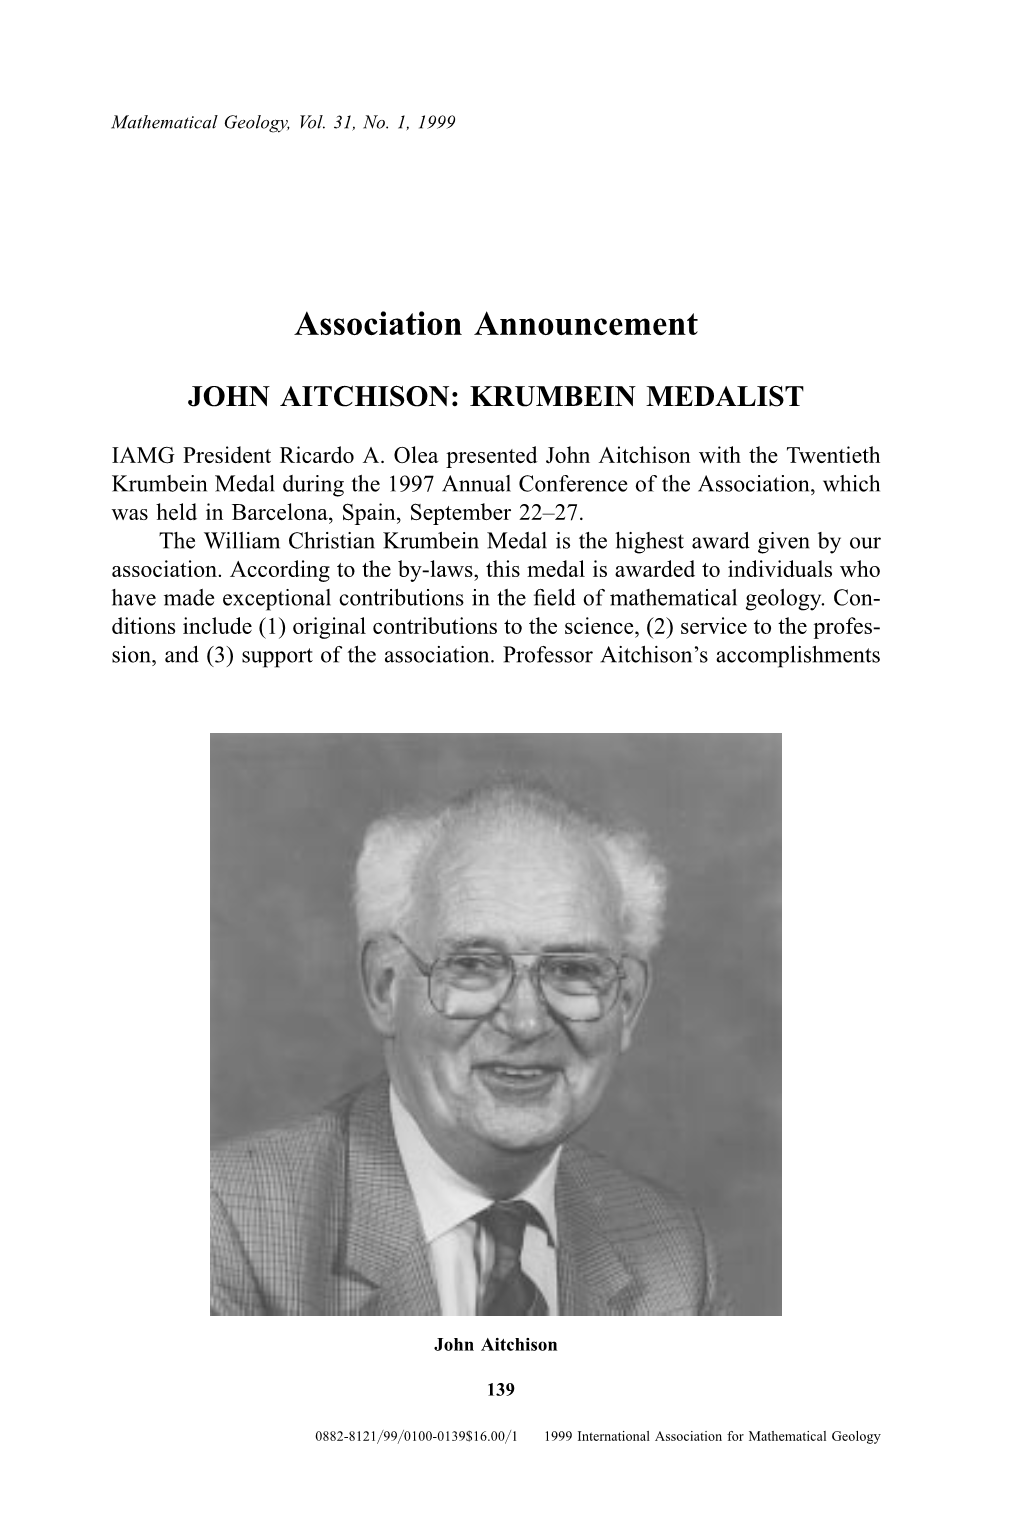 John Aitchison: Krumbein Medalist